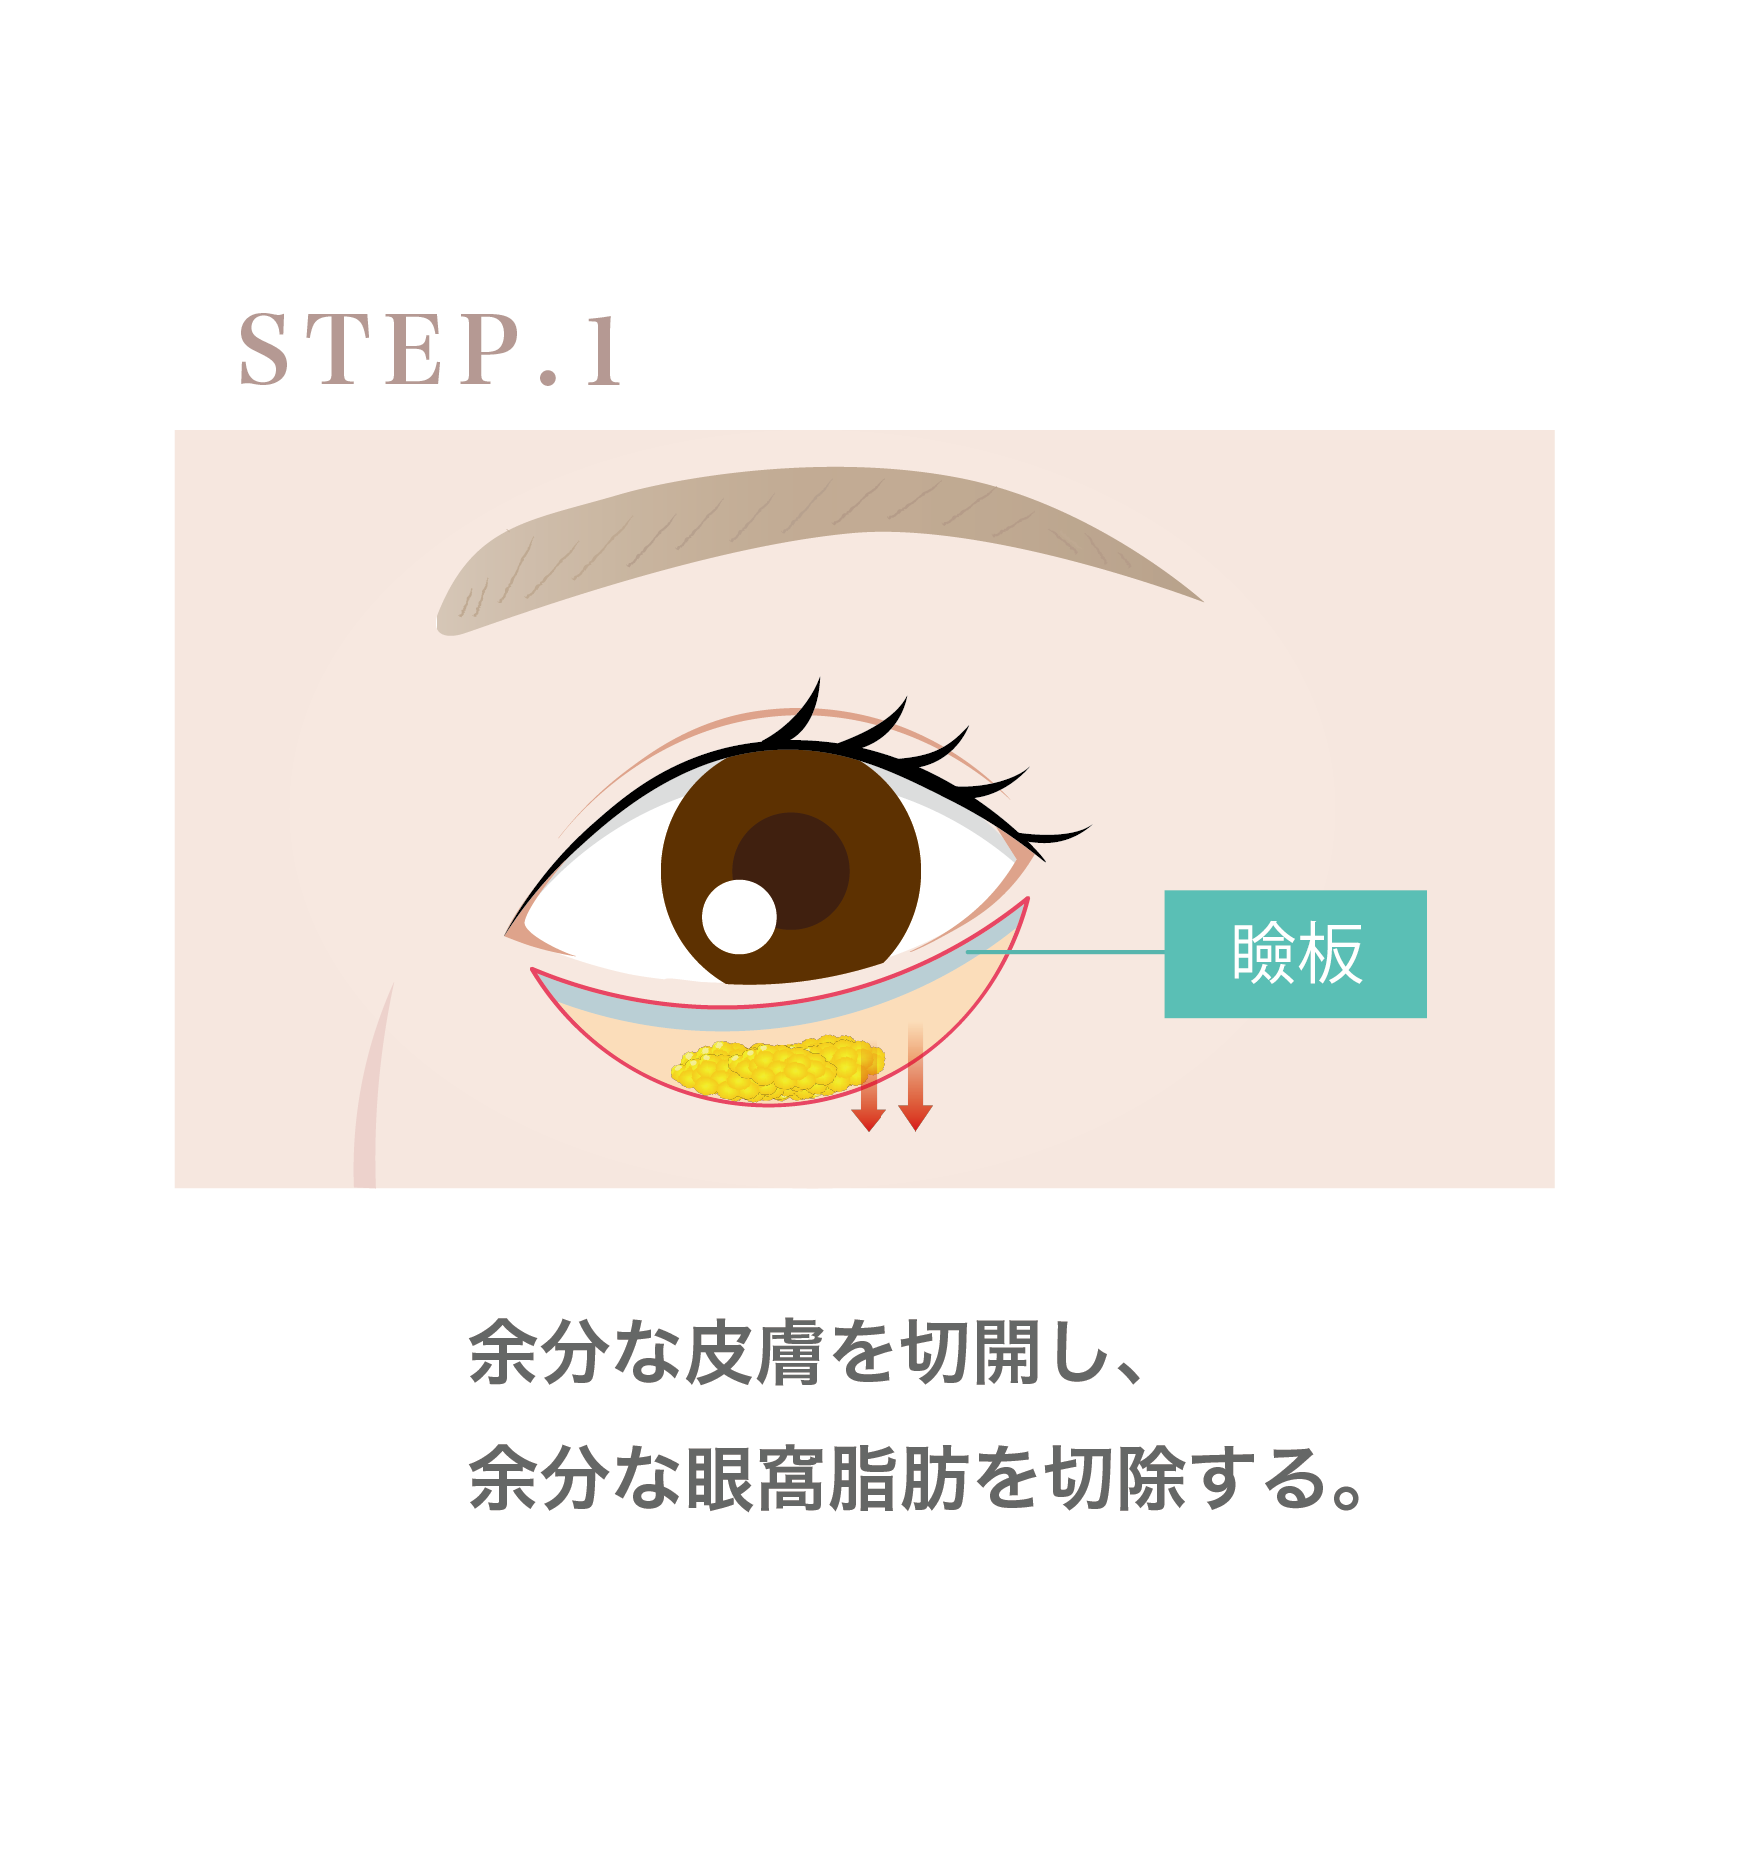 『直後からカラコン使用可能!!左右差も調整した下眼瞼下制術 (グラマラス形成) のダウンタイムを解説』の画像